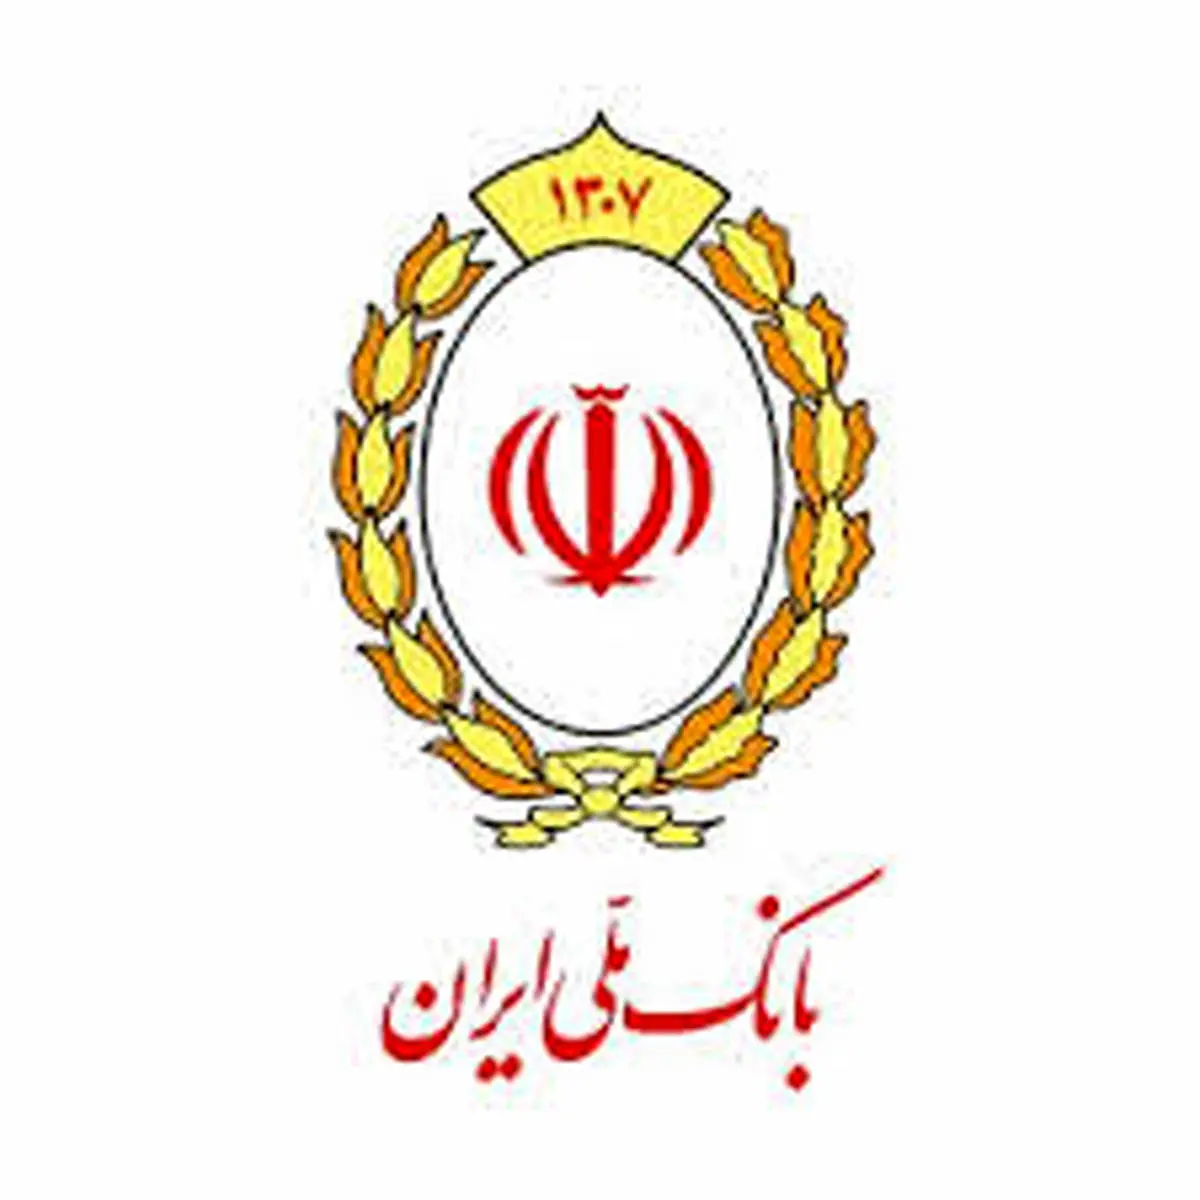 لینک جشن صدمین سالگرد بانک ملی ایران، ویروس است!

